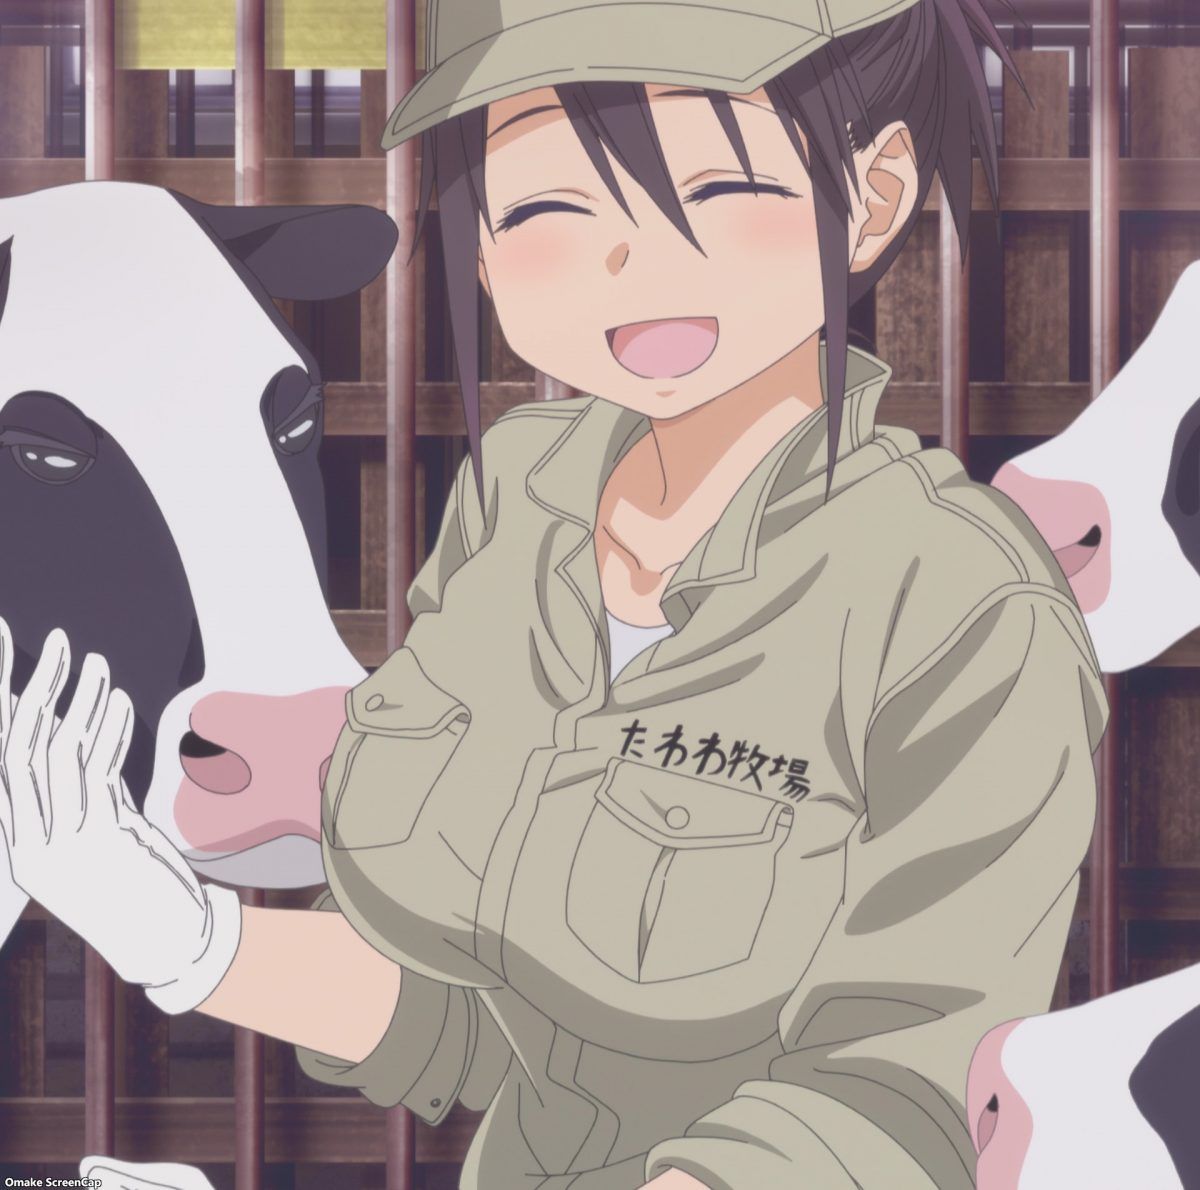 Tawawa On Monday Two Episode 5 Cow Girl Smiles